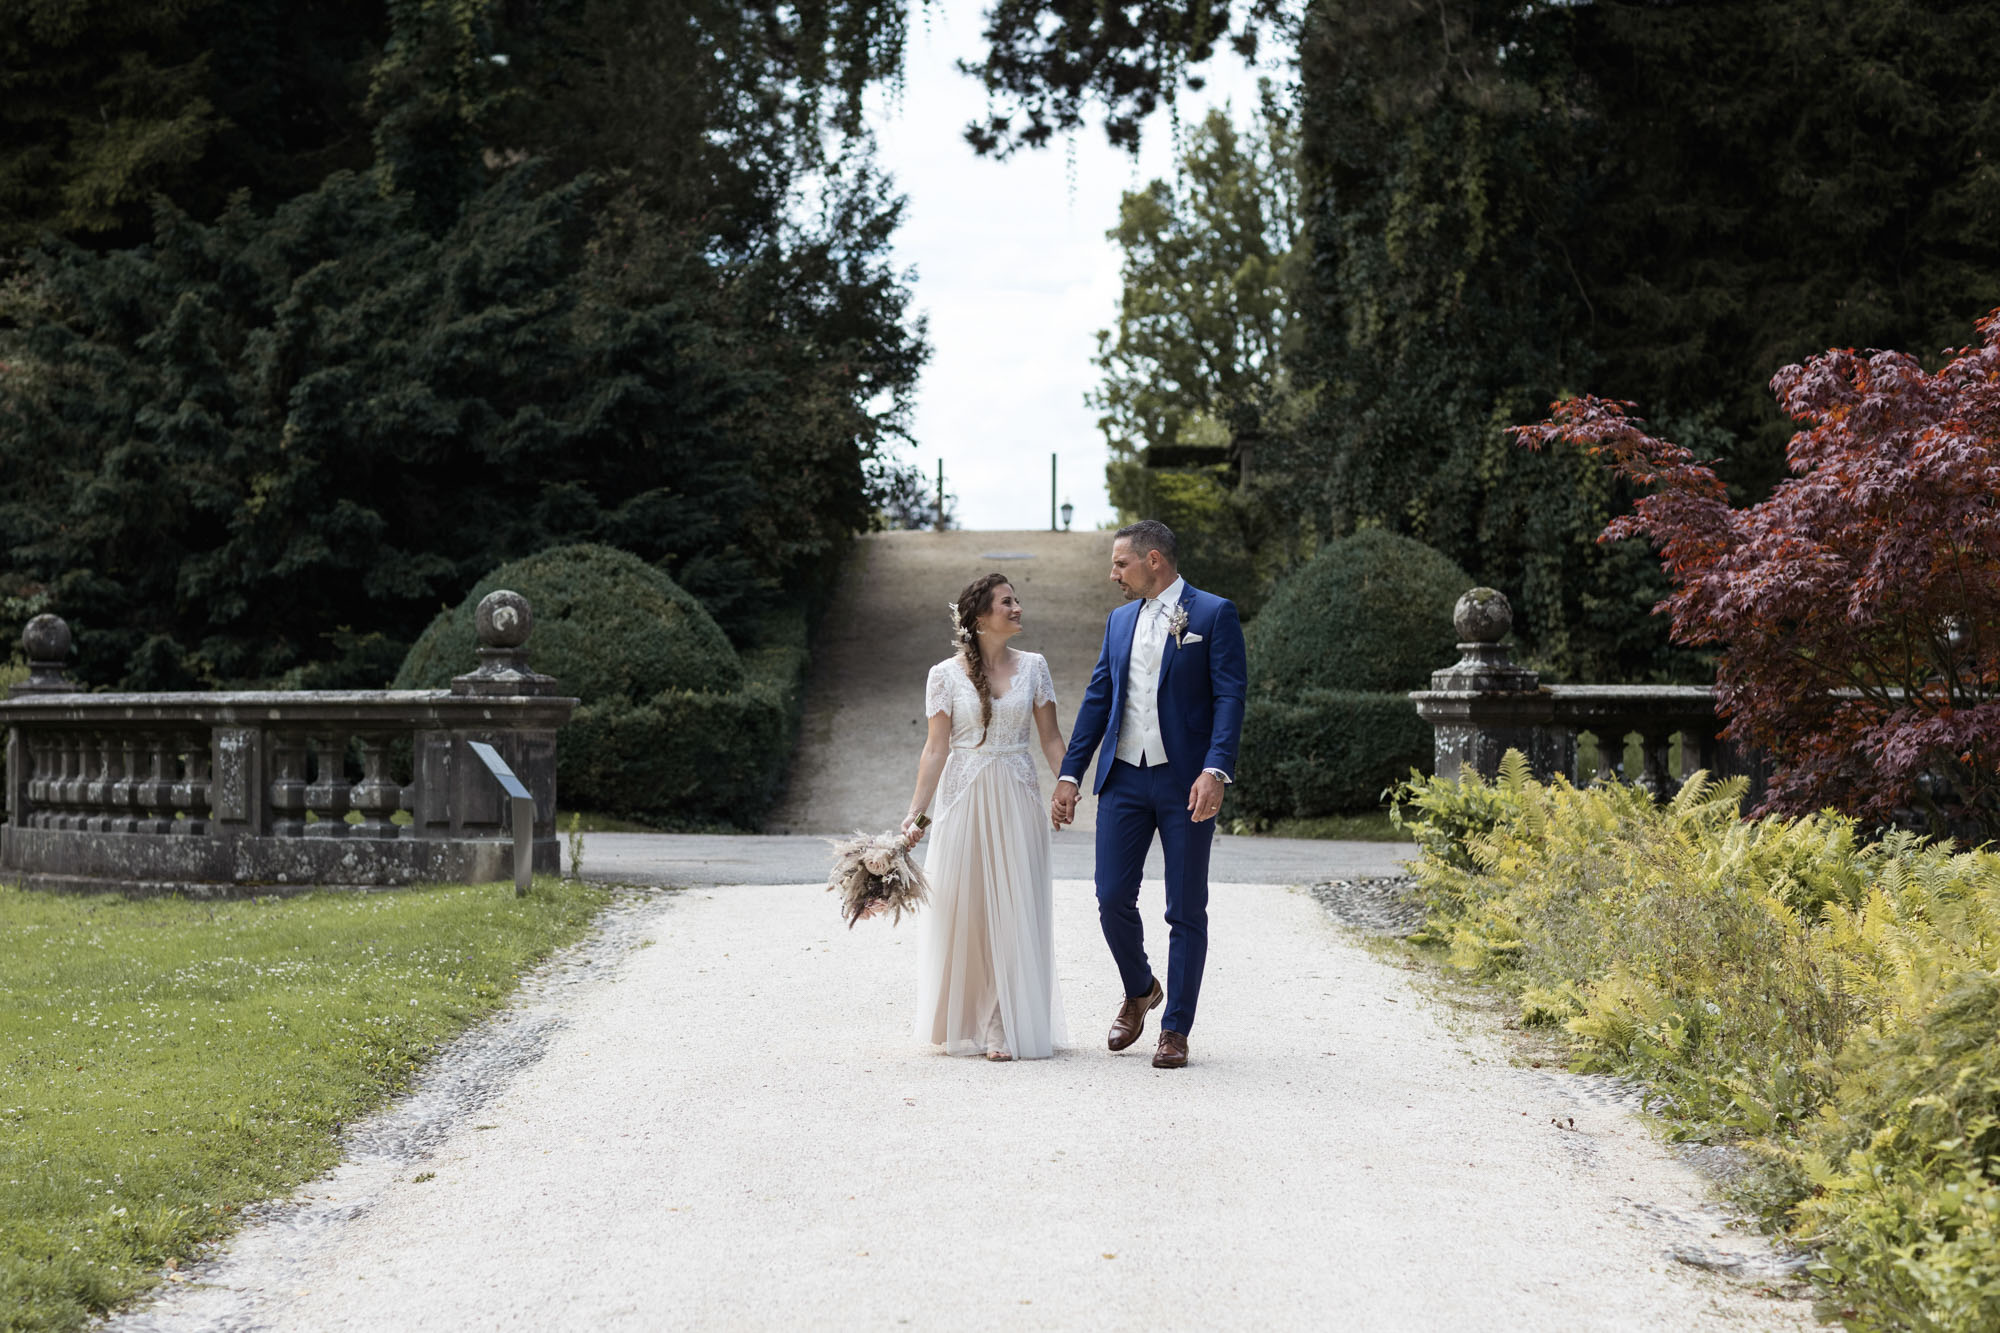 Brautpaar Fotoshooting im Wenkenpark - Hochzeit Villa Wenkenhof - Hochzeitsfotografen Basel